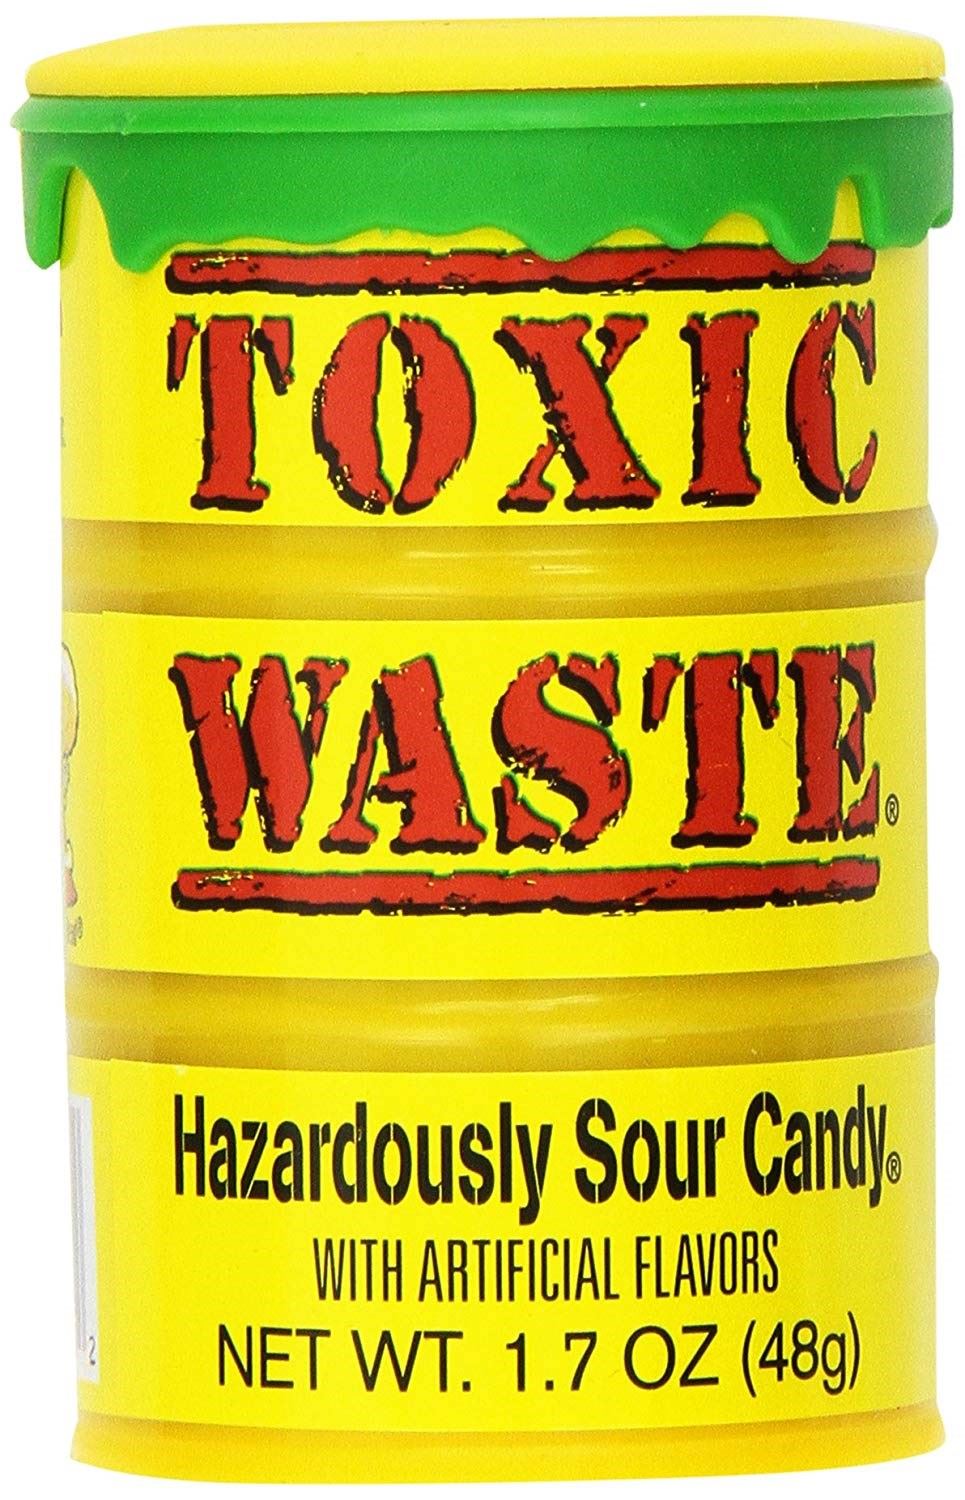 Toxic waste конфеты. Самые кислые конфеты в мире Toxic. Леденцы Toxic waste. Кислые конфеты Toxic waste.